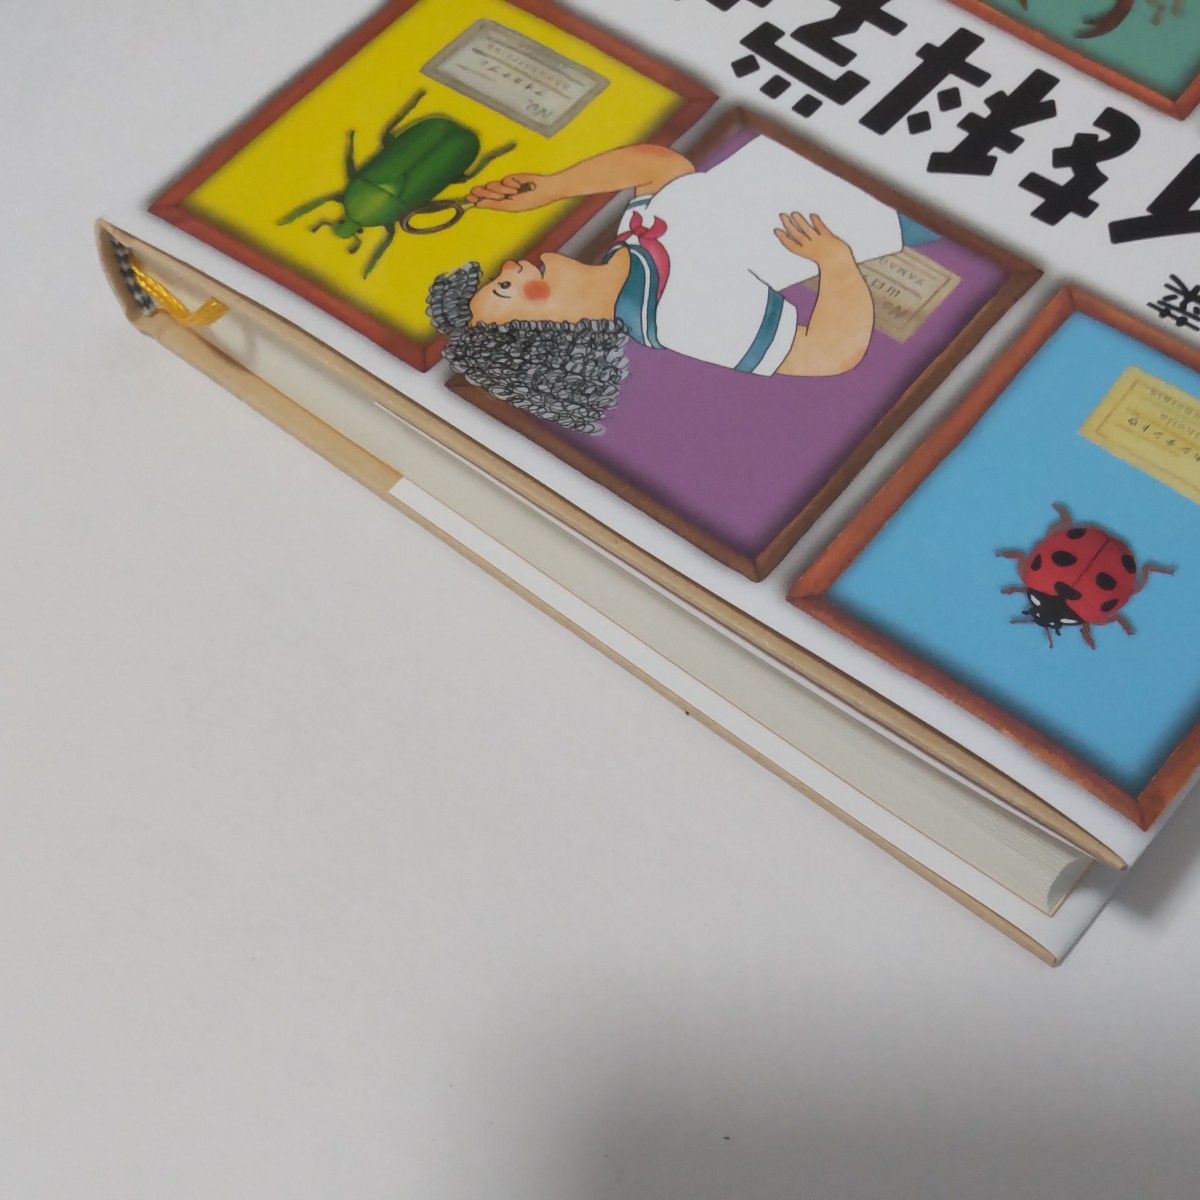 中学生  読書感想文  世界を科学せよ  安田夏菜  小学生  児童図書 科学  課題図書  2022  